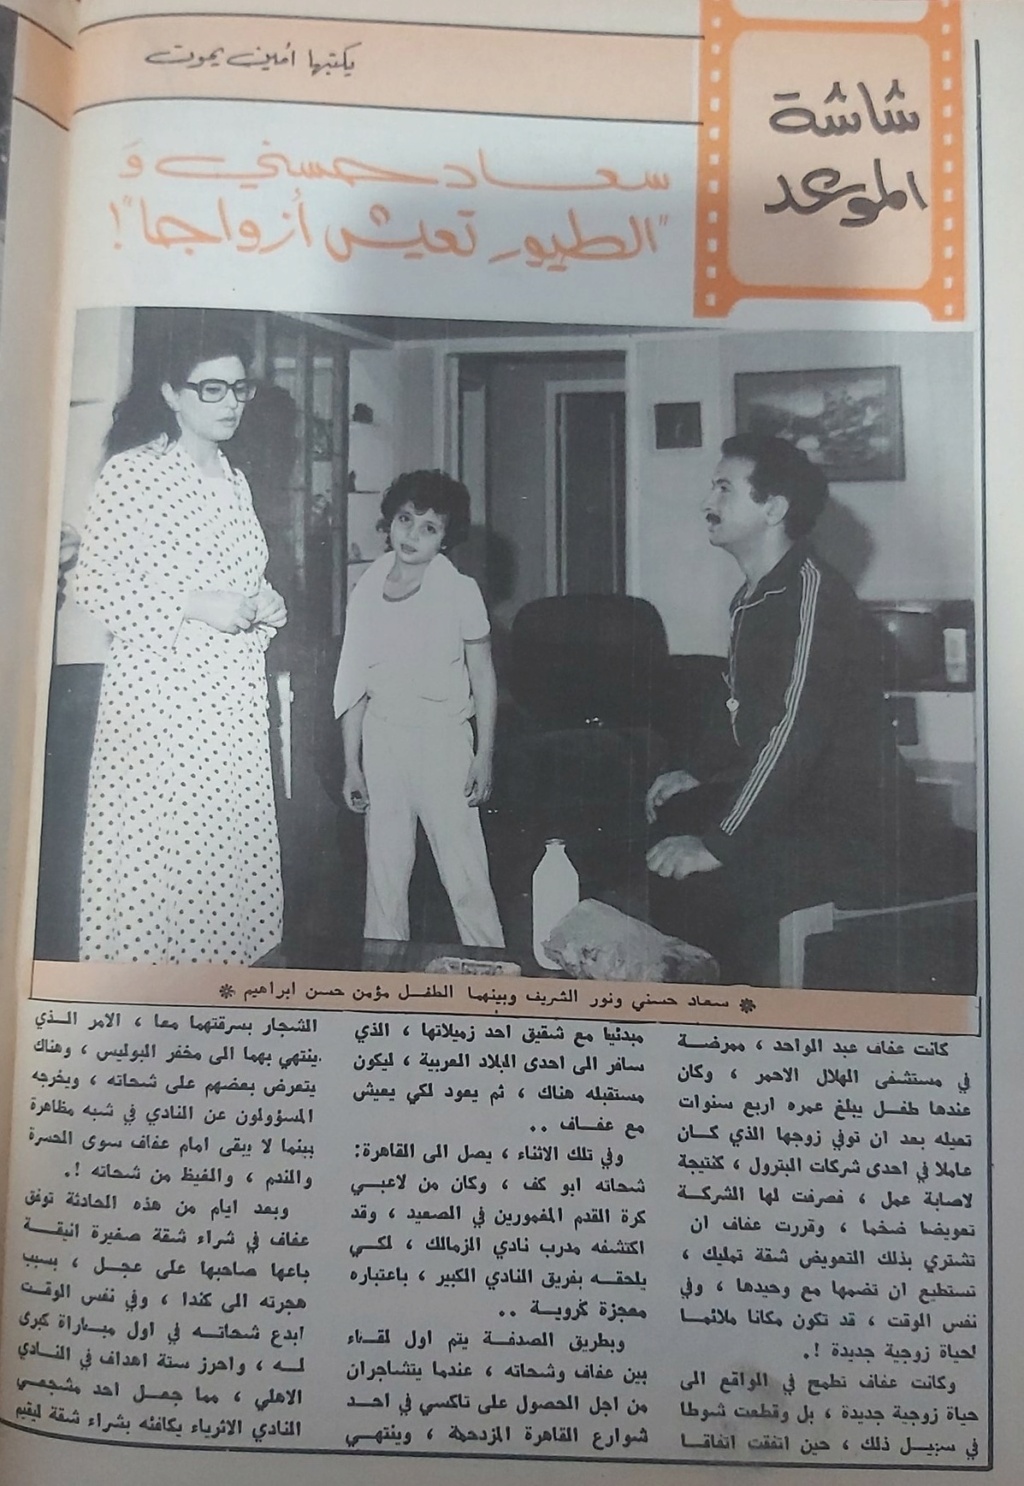 مقال صحفي : سعاد حسني والطيور تعيش أزواجاً 1982 م 173